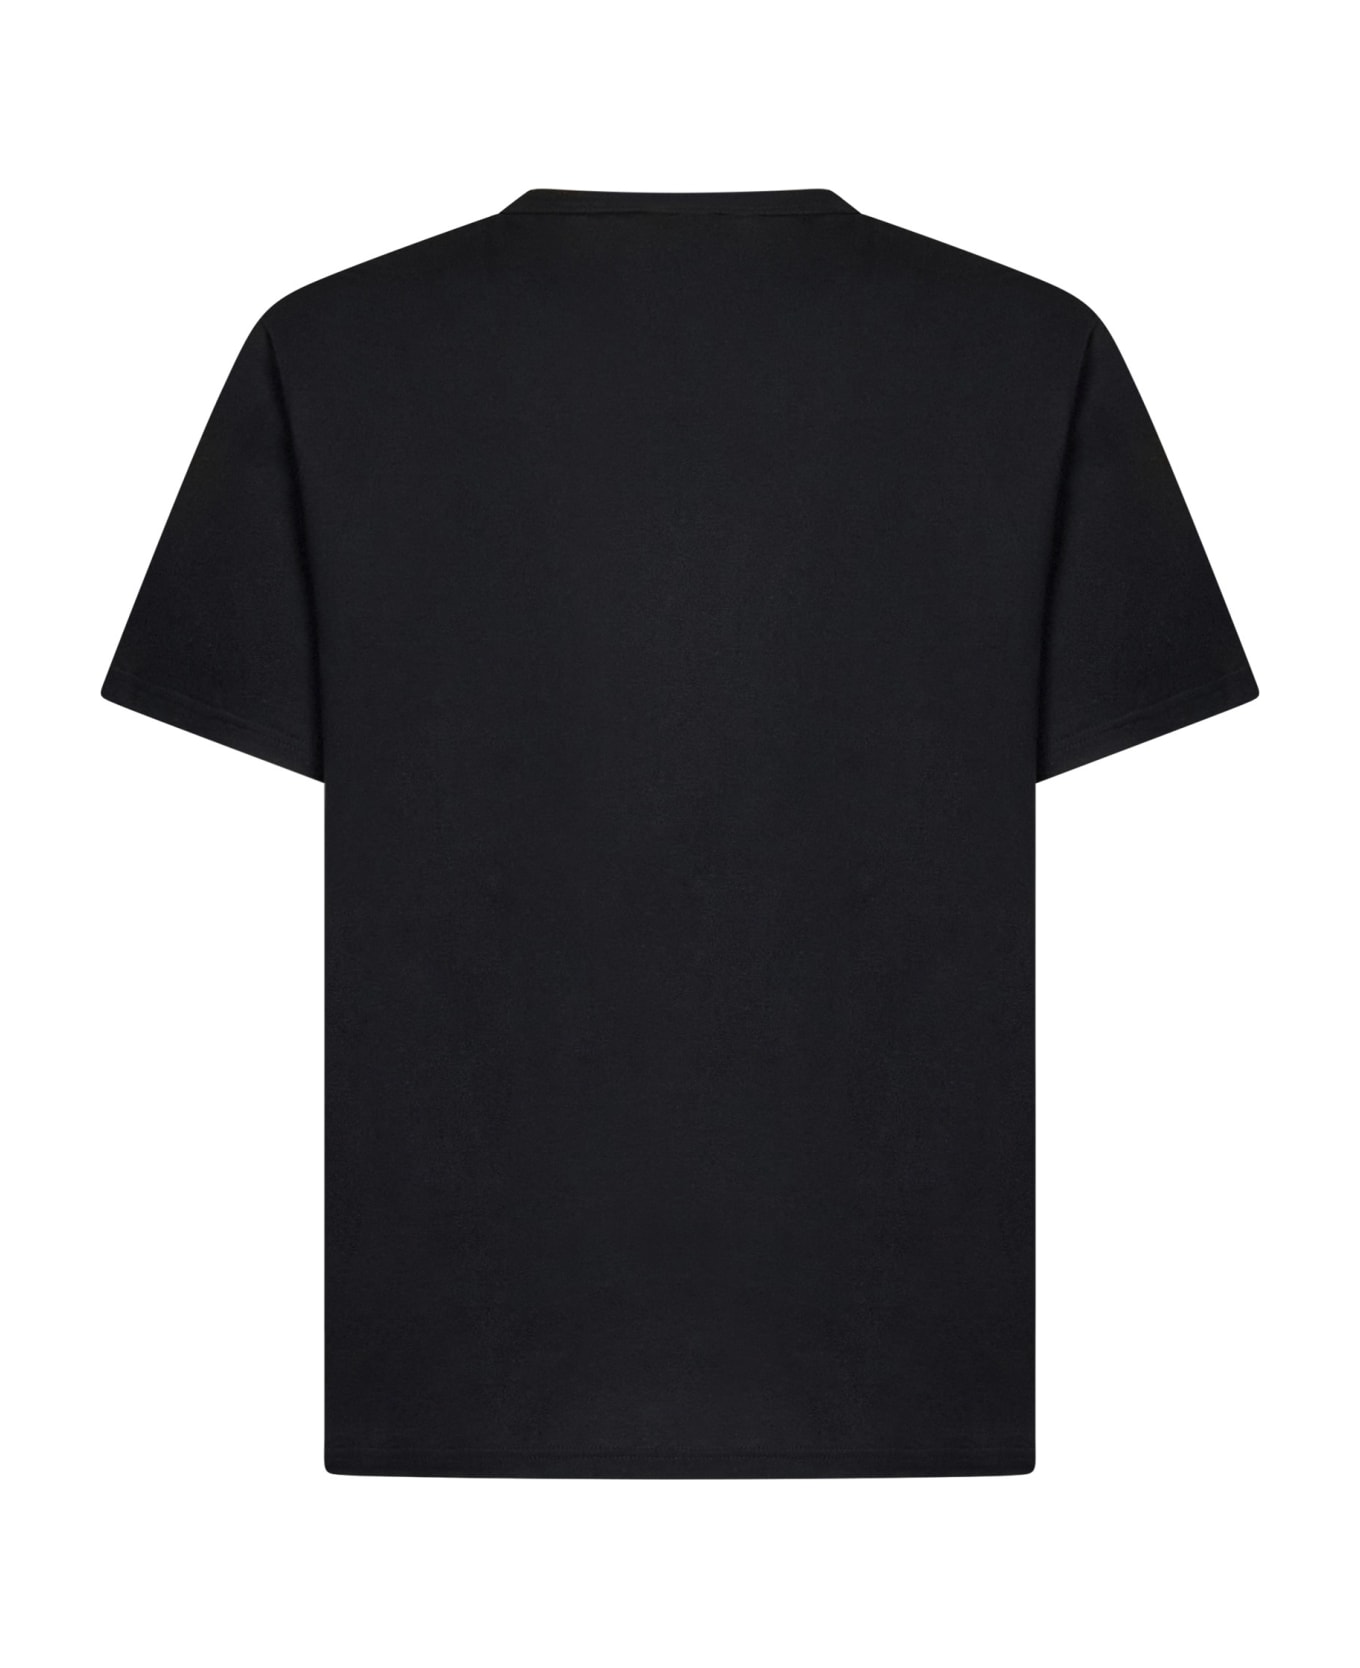 Alexander McQueen Floral Skull T-shirt - Black